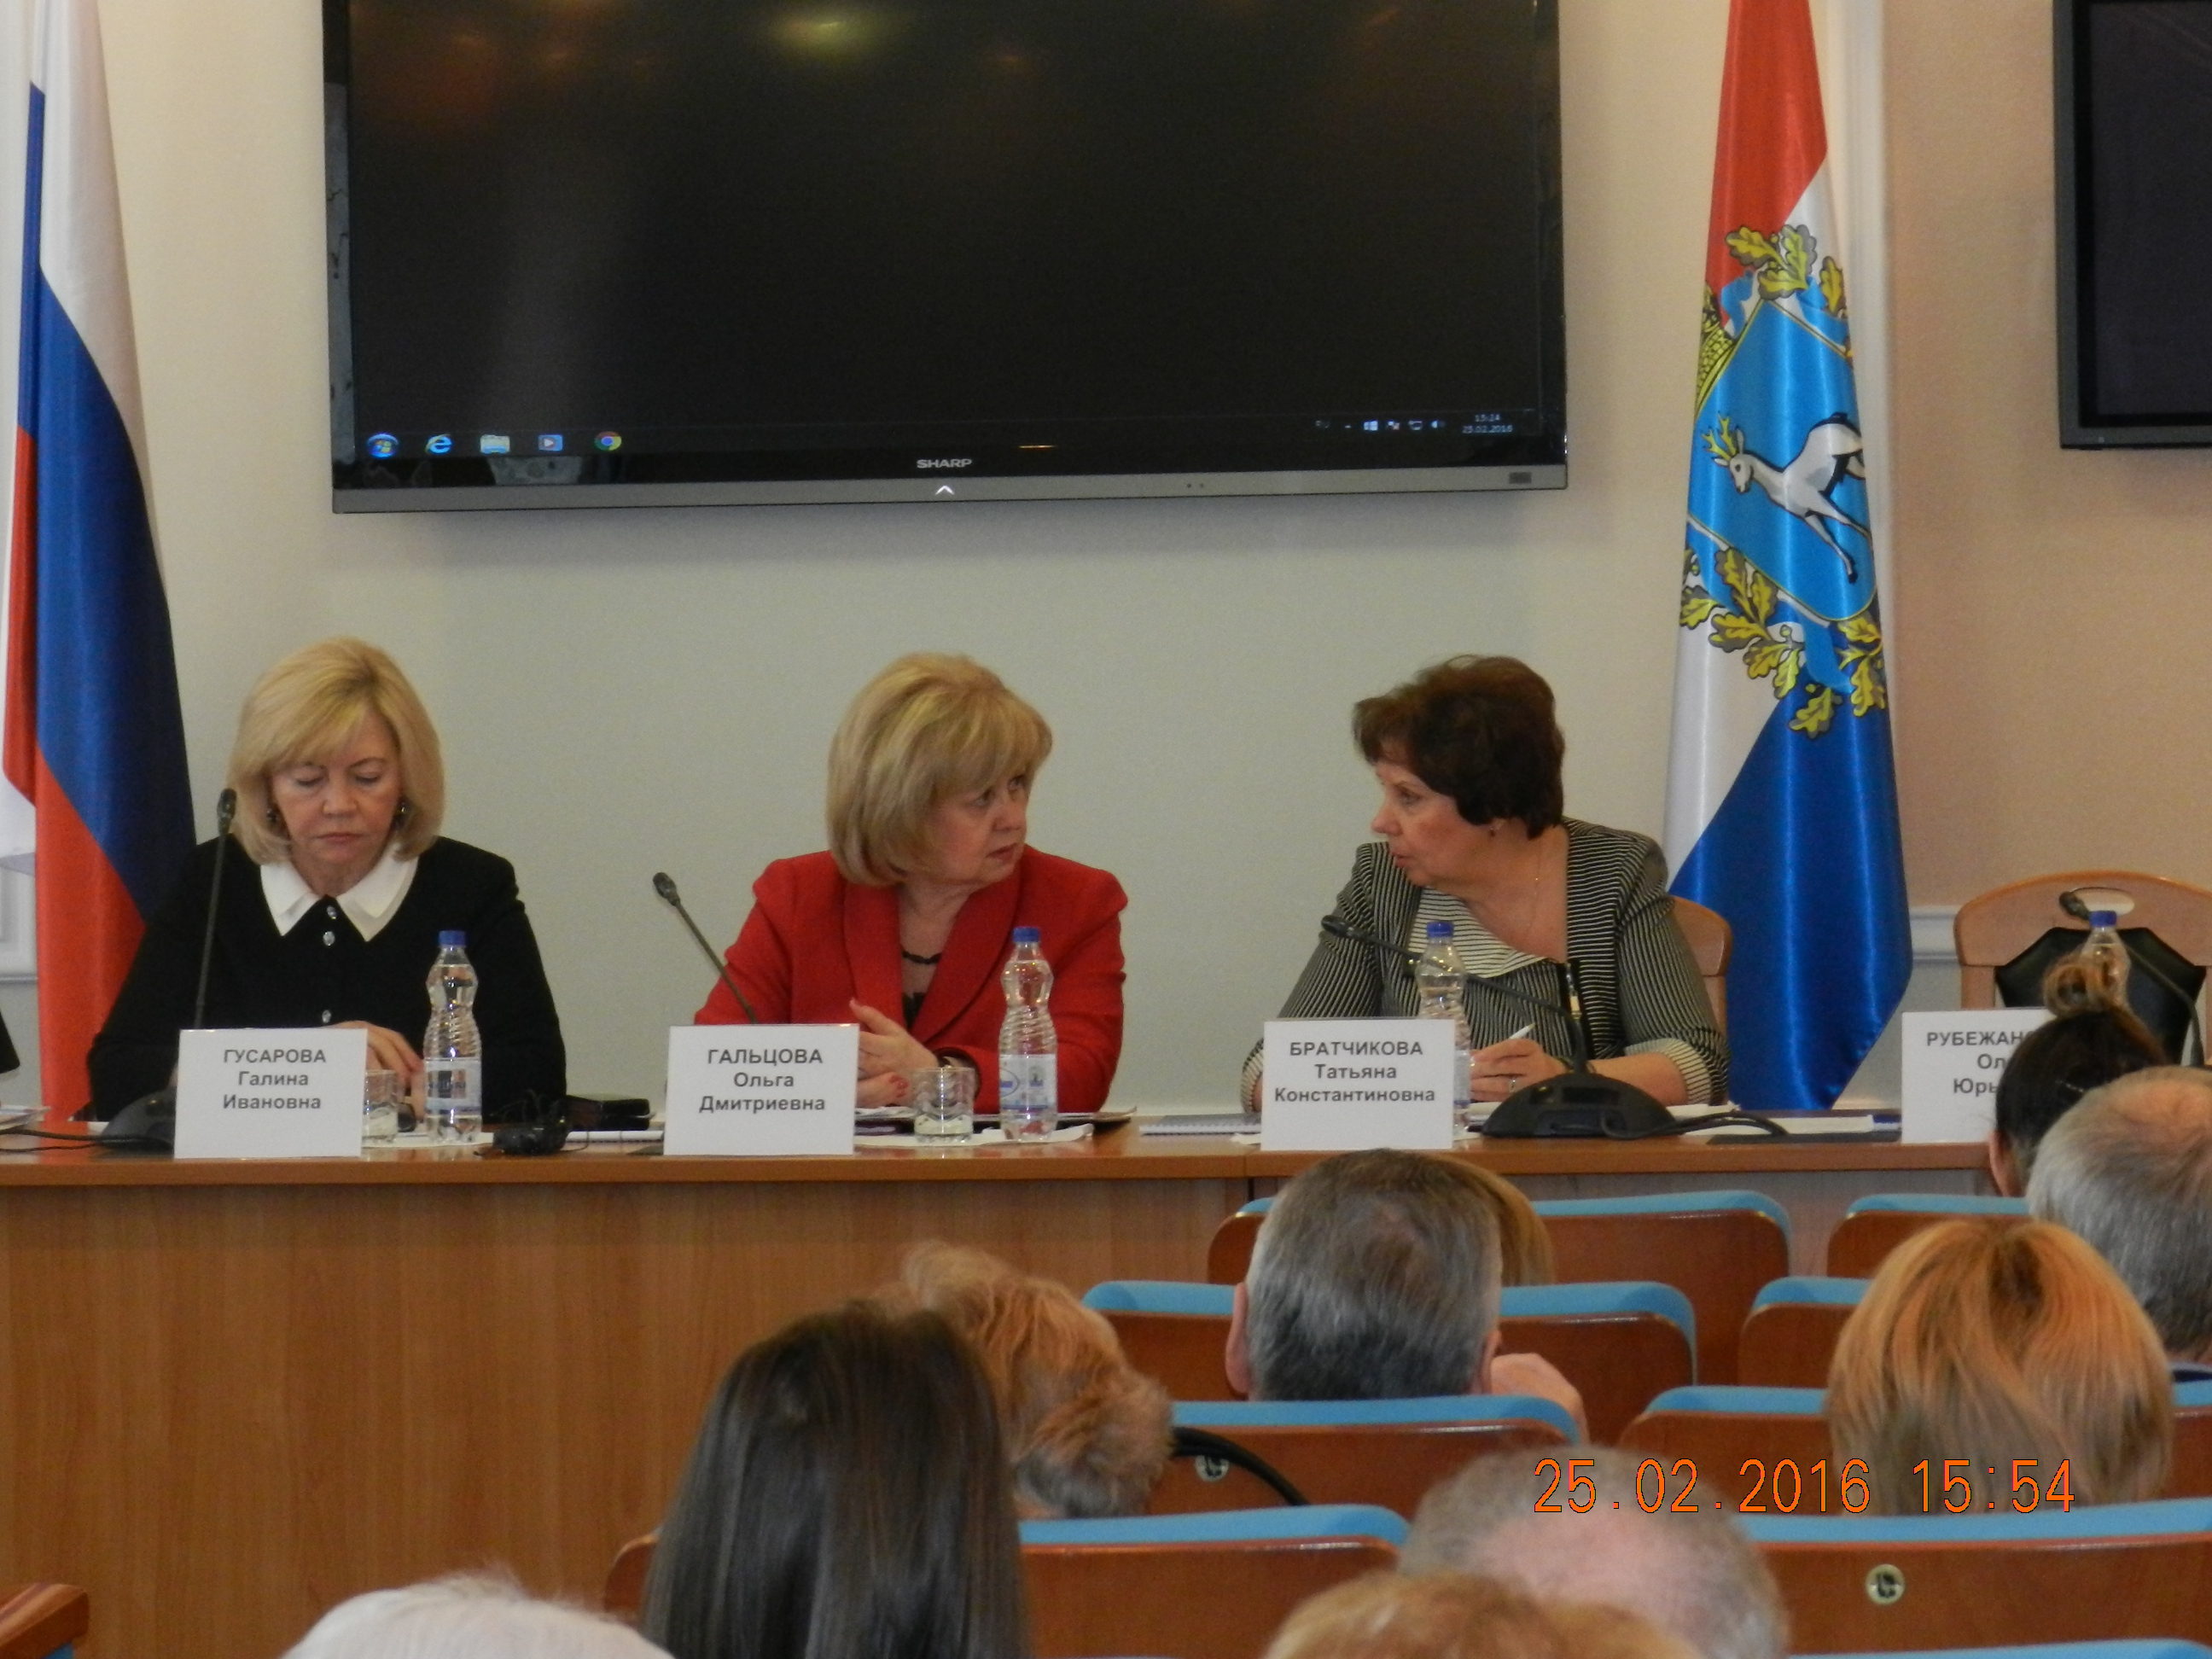 Расширенное заседание Общественного совета и Экспертного совета по вопросам прав и свобод человека при Уполномоченном по правам человека в Самарской области